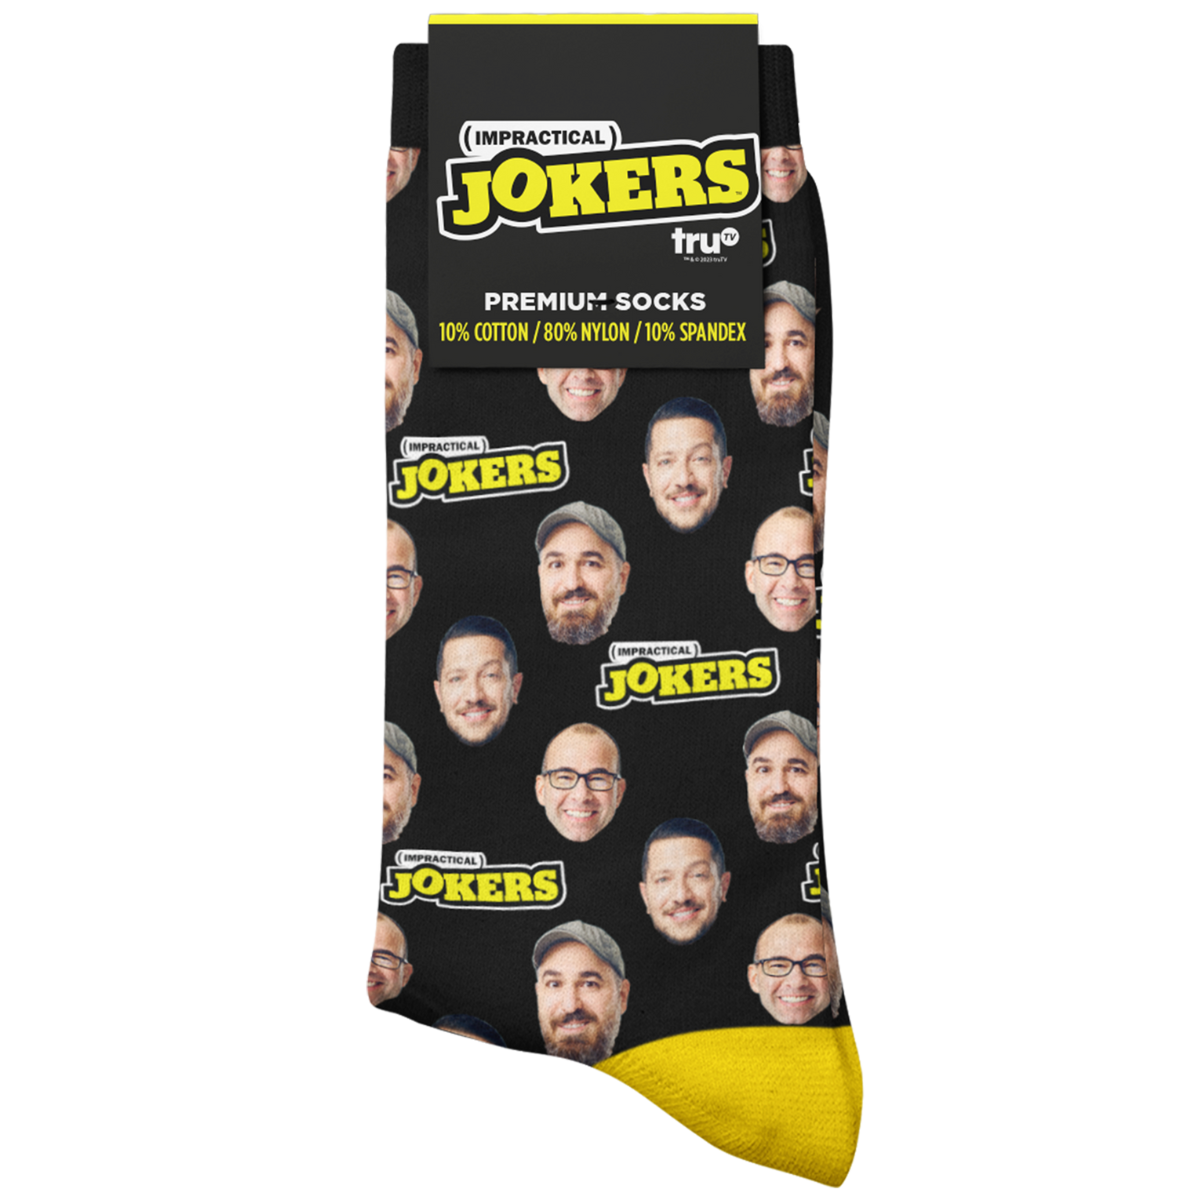 Face Socks